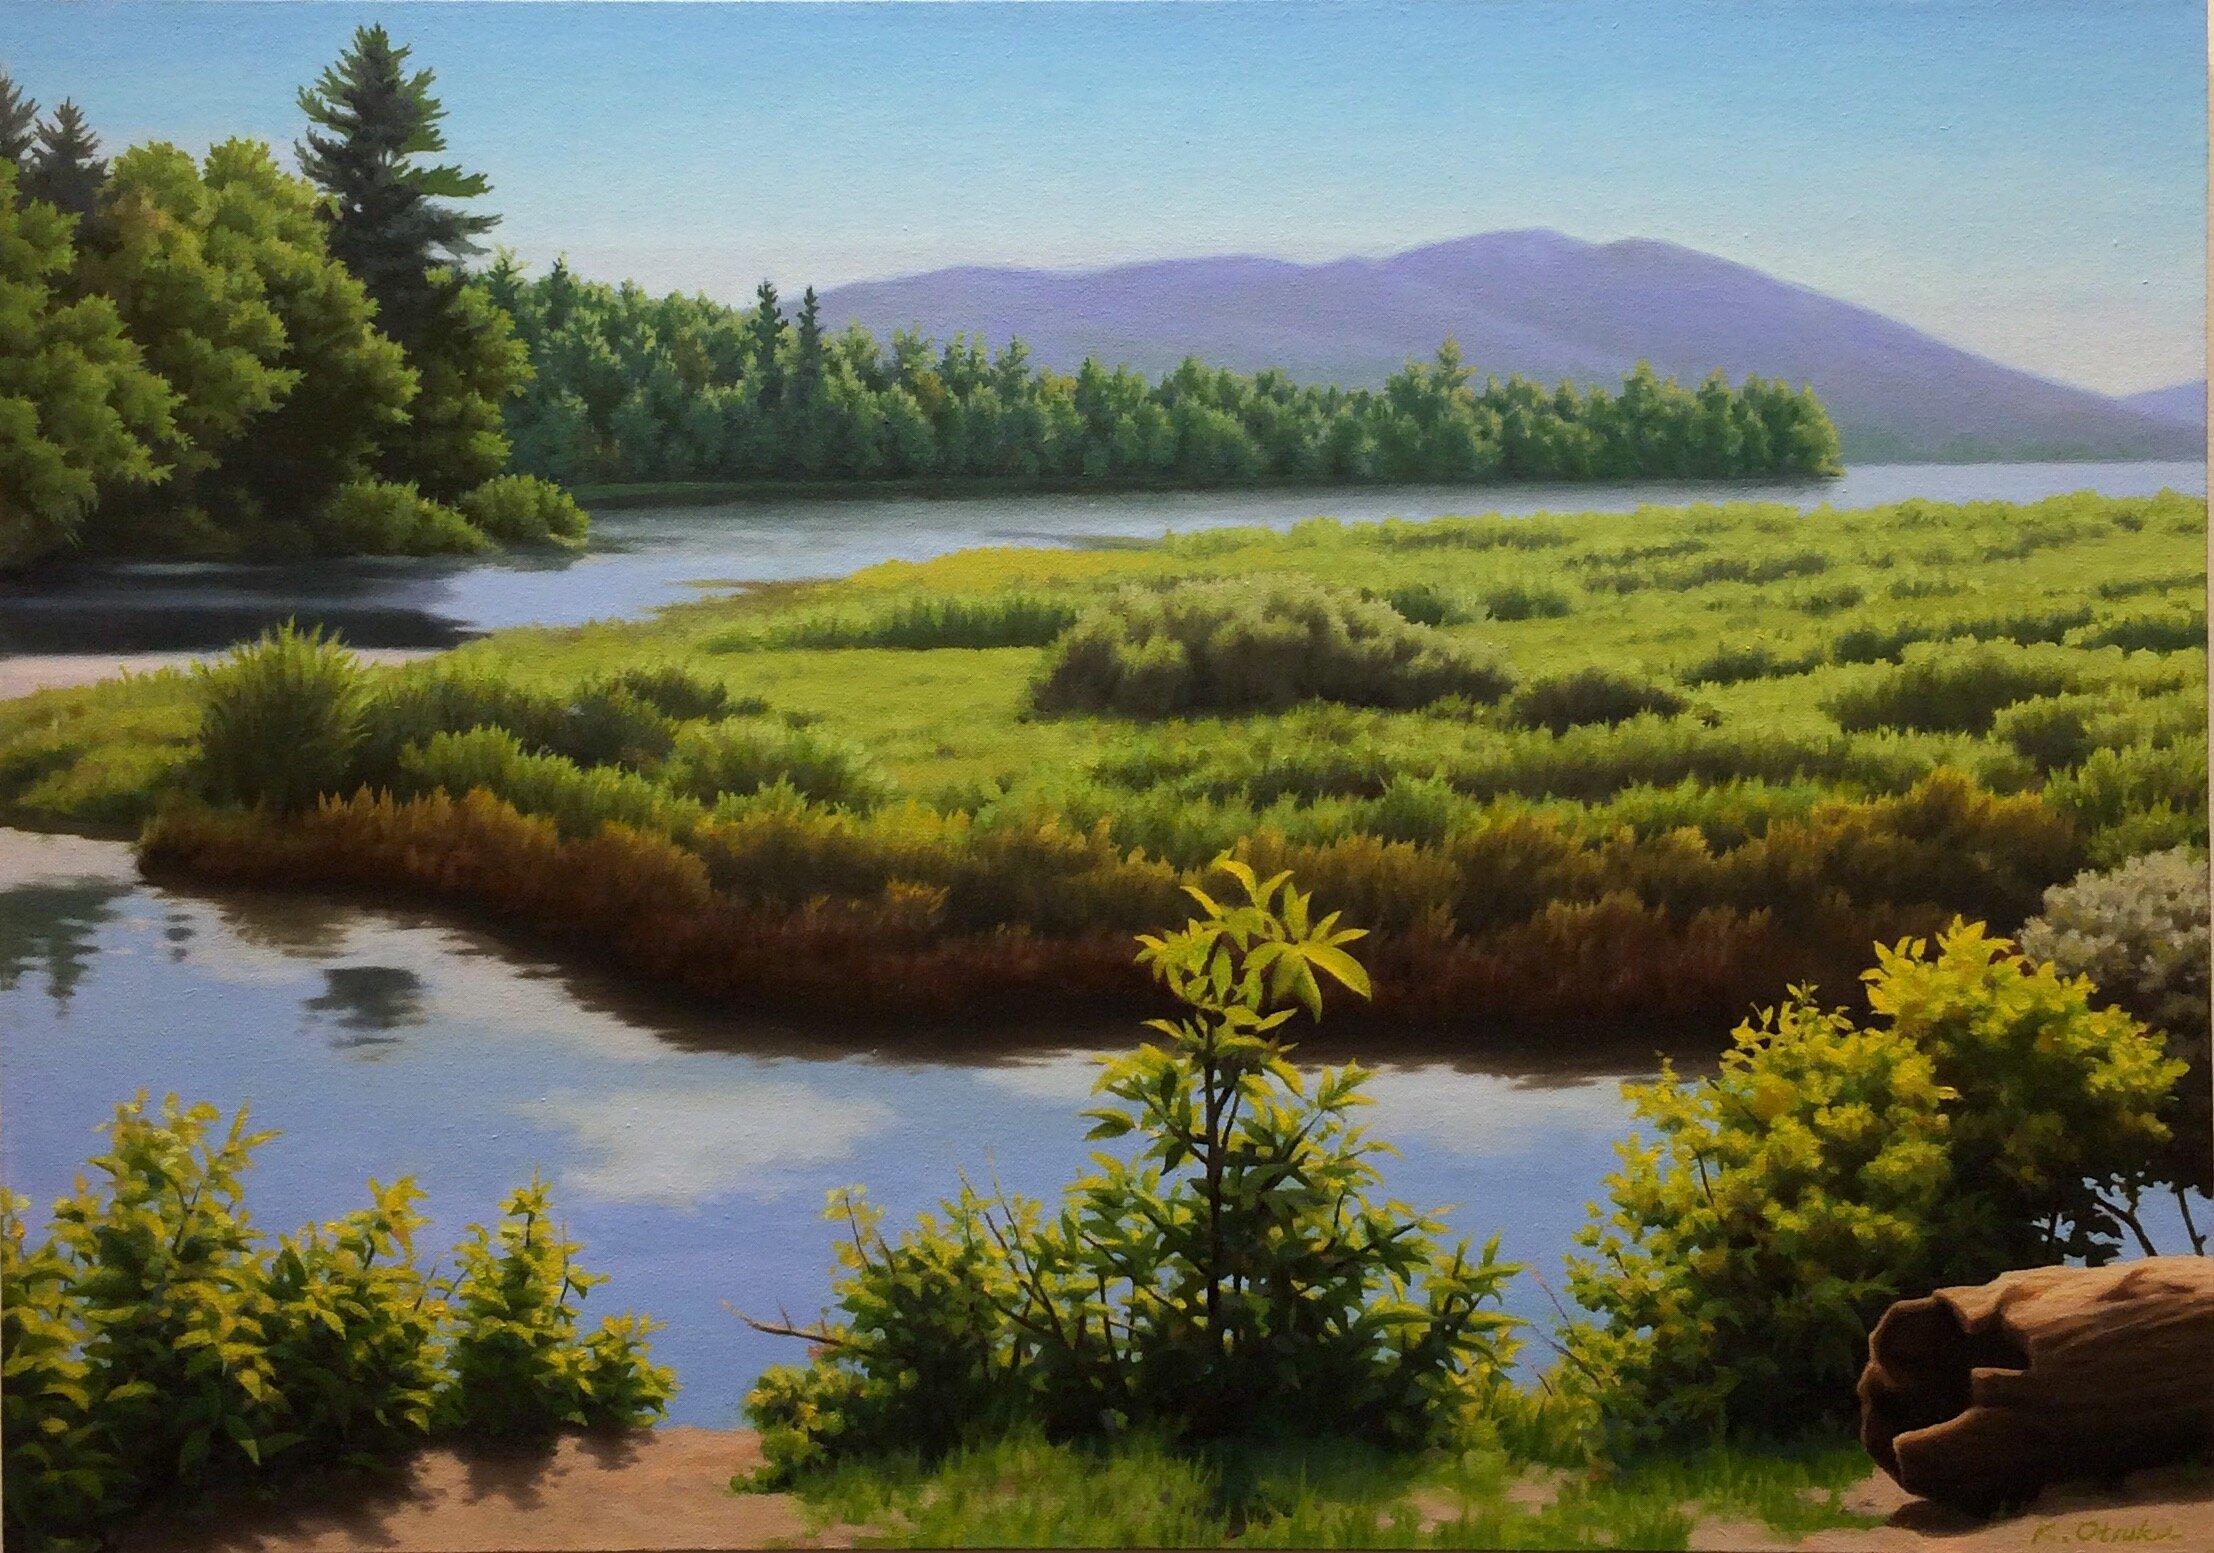 Ken Otsuka, "Lewey Lake", Summer Lake Landscape Oil Painting on Canvas